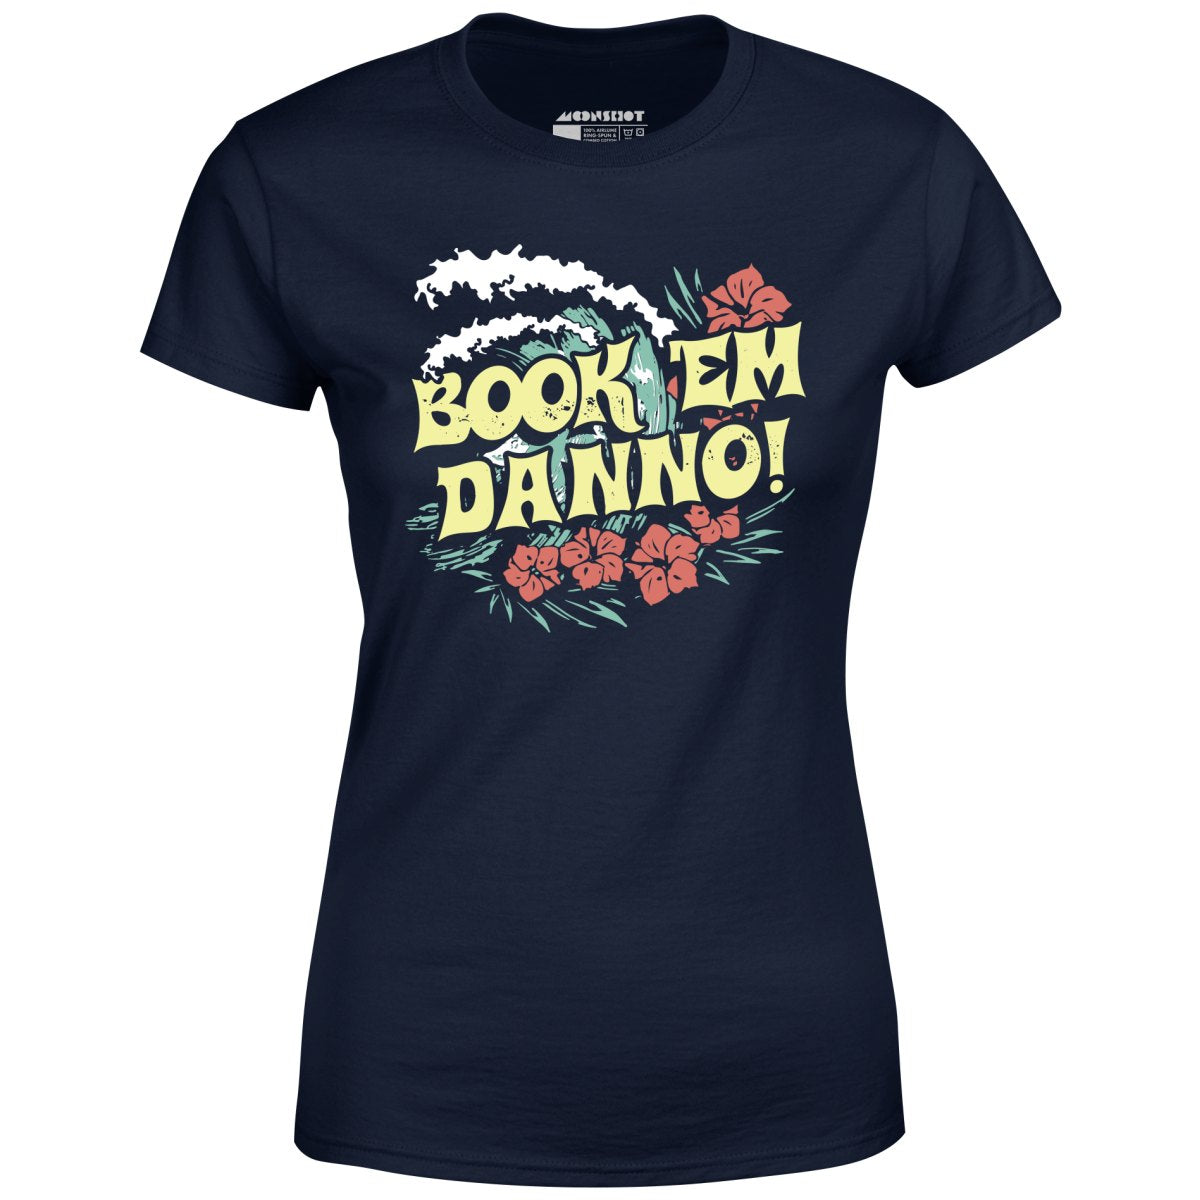 Book 'em Danno! - Women's T-Shirt